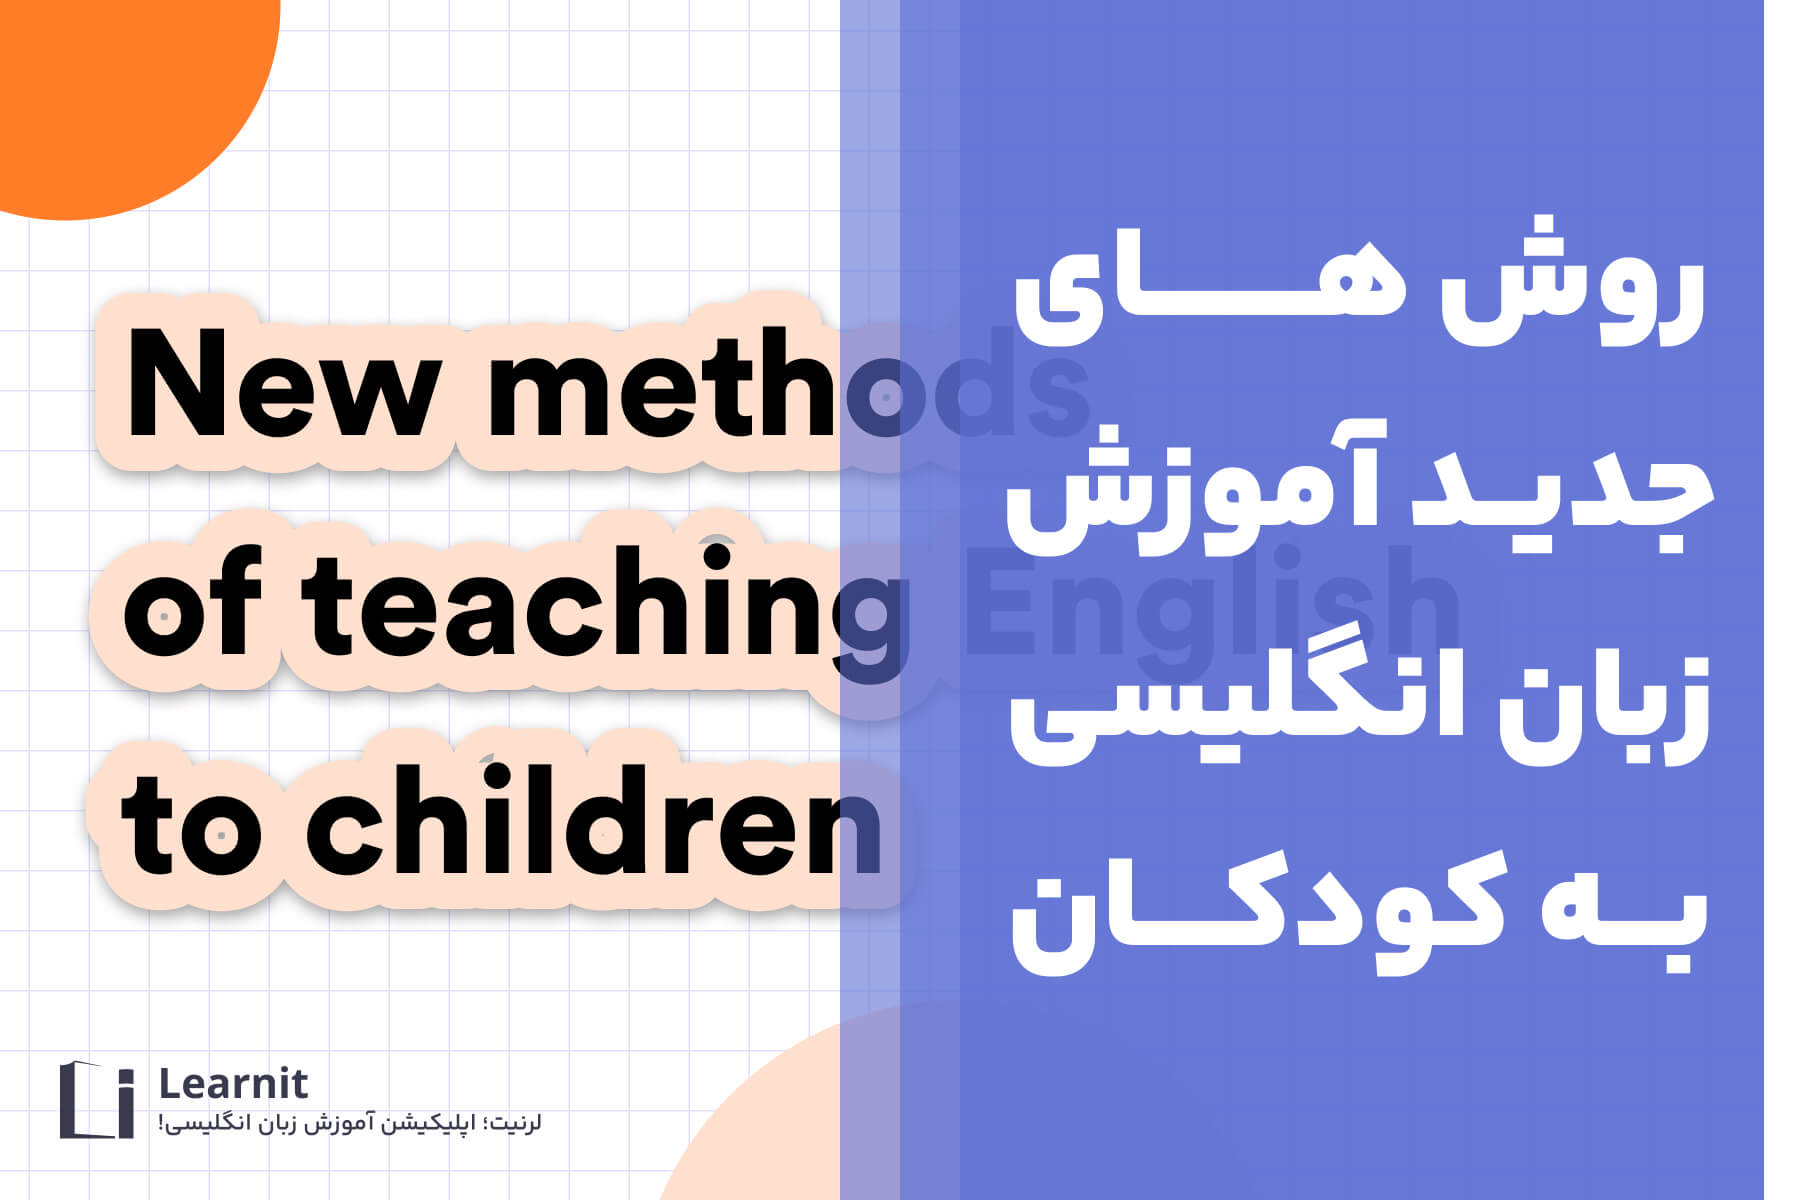 روش های جدید برای آموزش زبان به کودکان